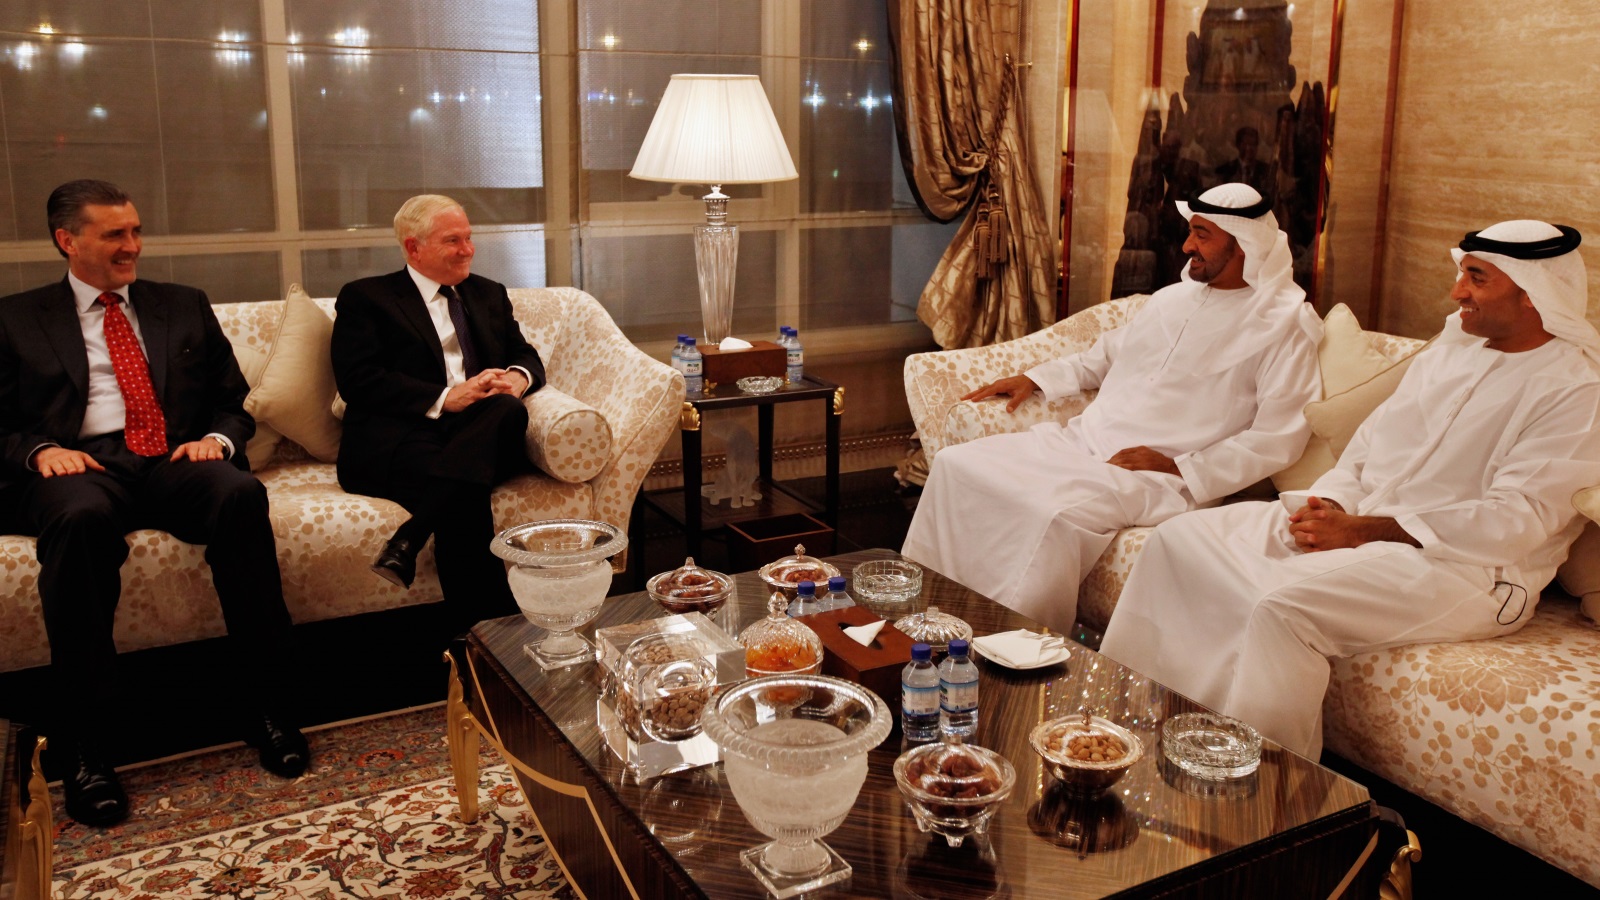 محمد بن زايد يجتمع بوزير الدفاع الأسبق روبرت غيتس وسفير الإمارات لدى الولايات المتحدة والسفير الأمريكي لدى الإمارات  (غيتي)